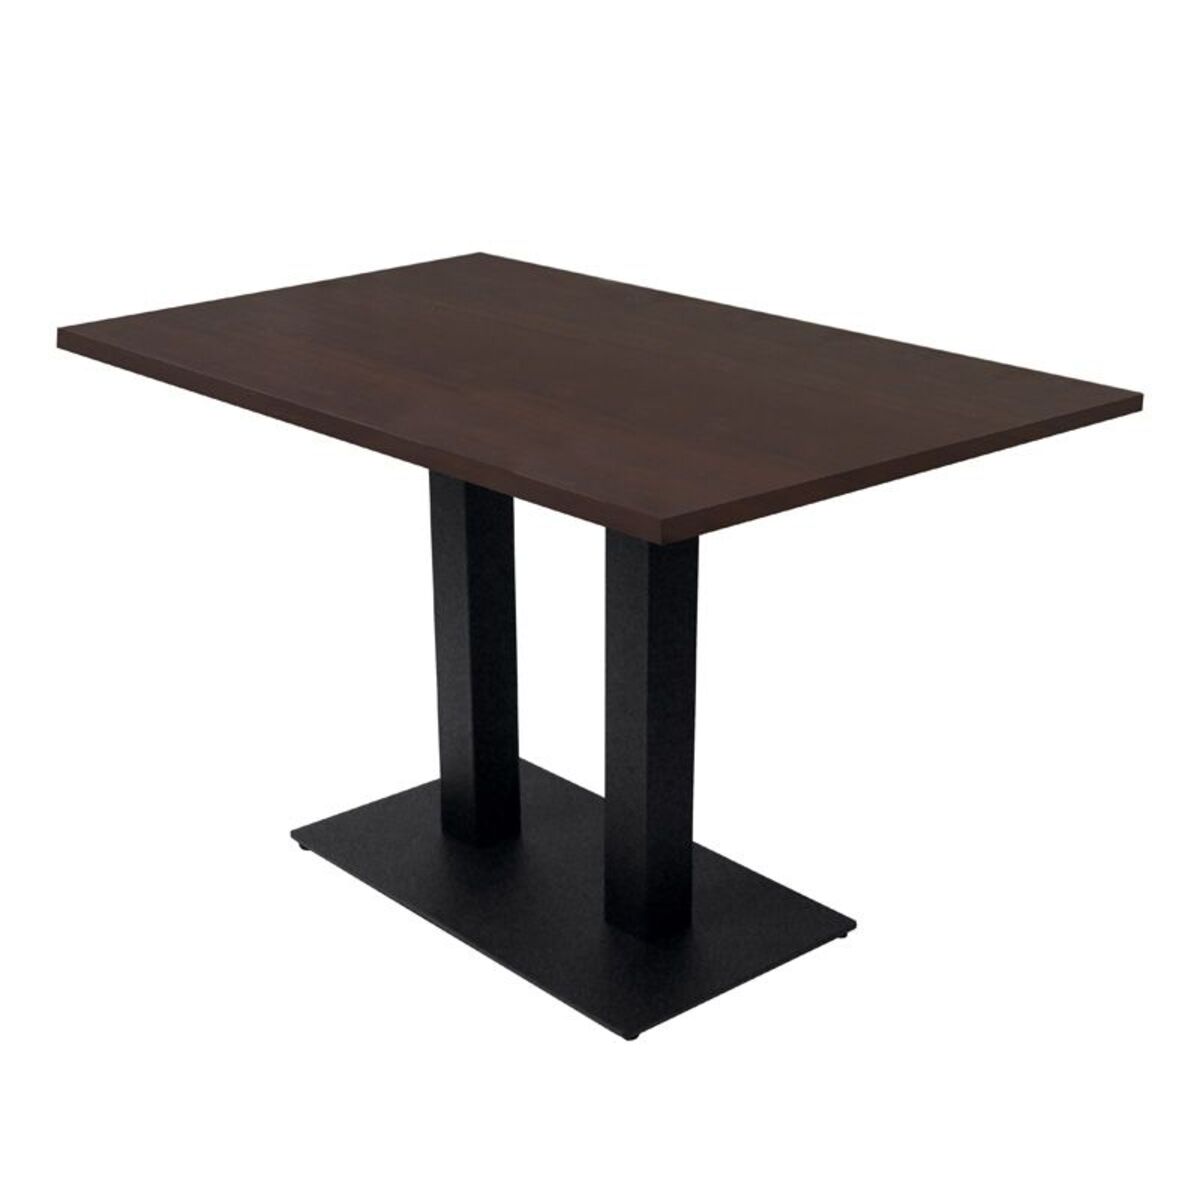 Table intérieure pied double noir & plateau tavola wengé 110 x70 cm